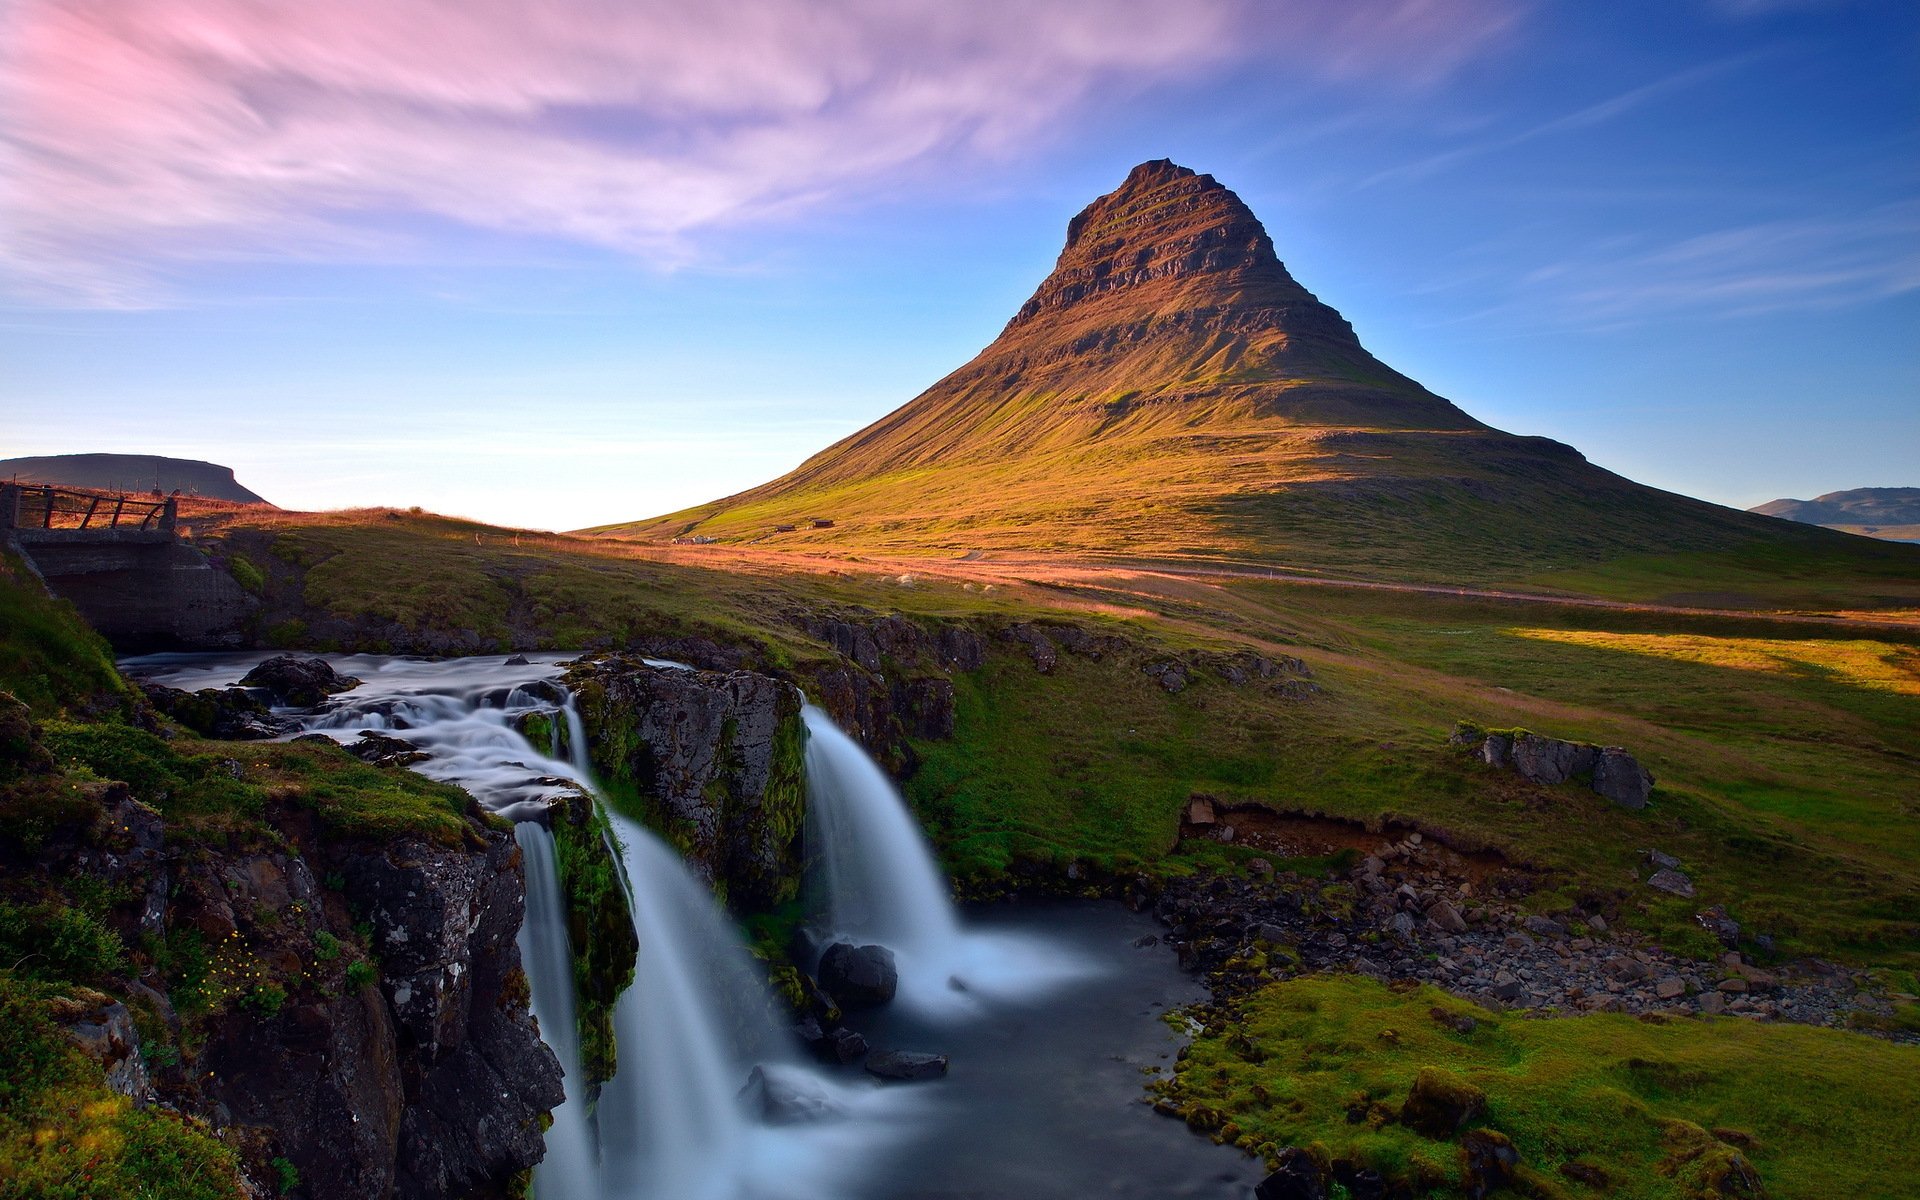 Hình nền và Kirkjufell: Kirkjufell - ngọn núi lừng danh tại Iceland với vẻ đẹp ngoạn mục đã trở thành nguồn cảm hứng cho nhiều nhiếp ảnh gia. Những hình nền tuyệt đẹp được tạo nên từ ngọn núi này sẽ khiến bạn trầm trồ vì sự hoàn hảo.